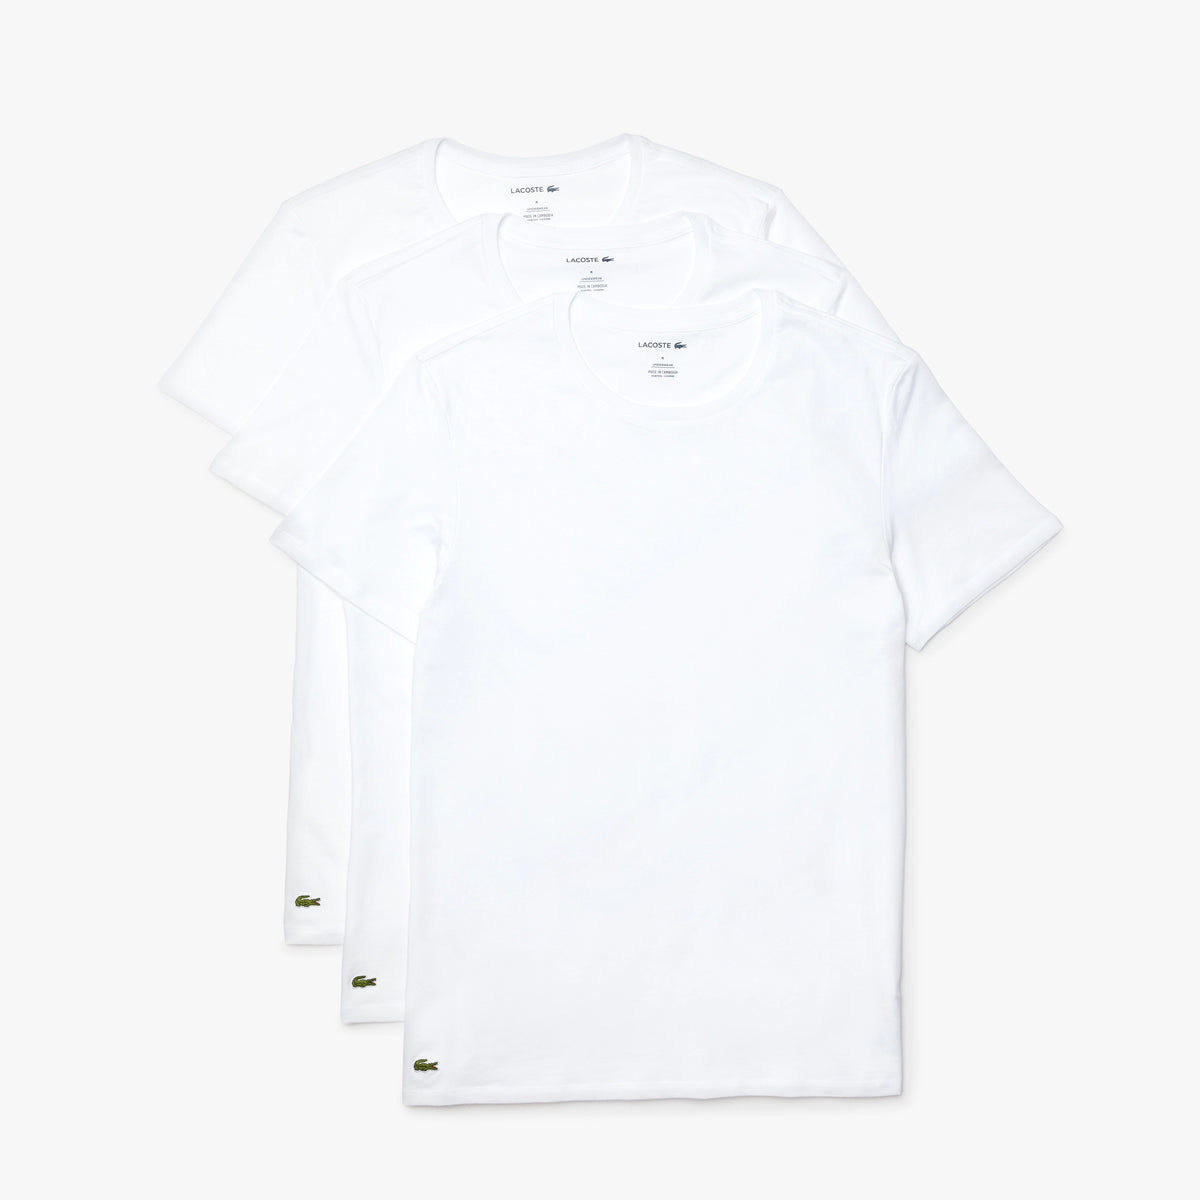 Men's 3 Pack of Plain Regular Crew Neck T-shirts - White